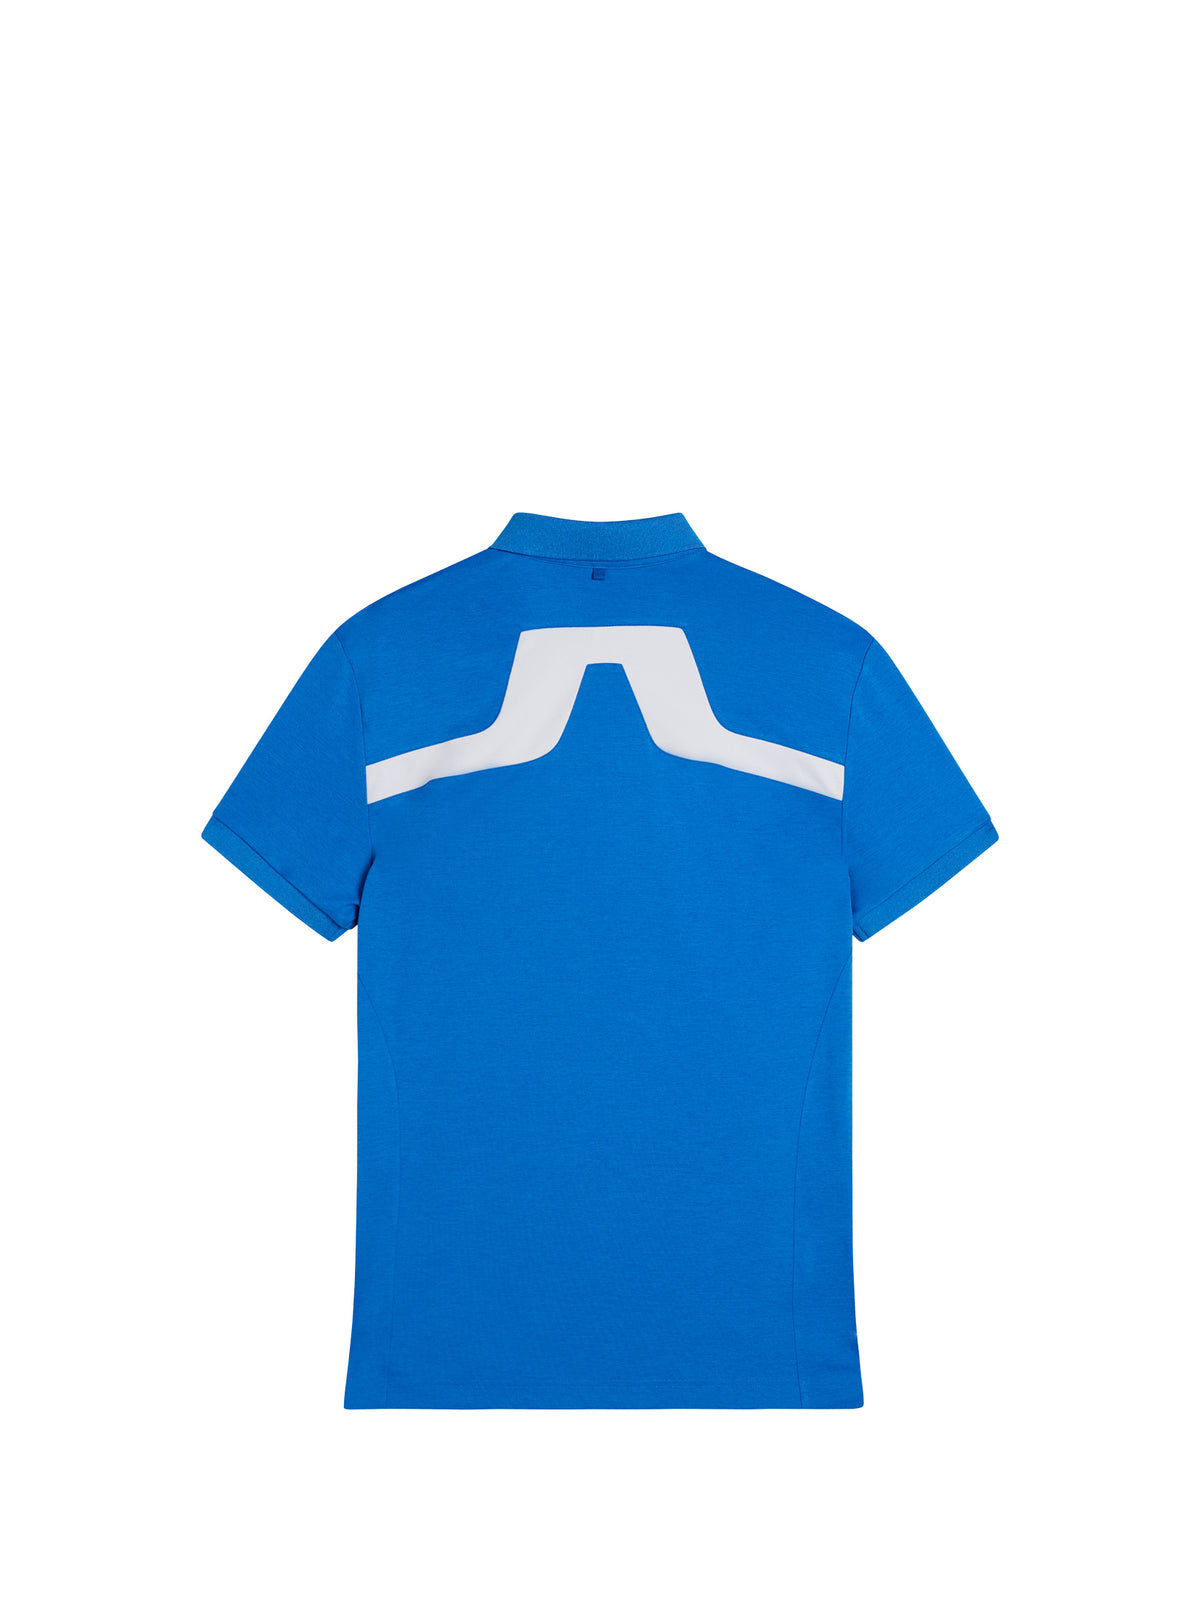 KV Regular Fit Polo / Lapis Blue Melange